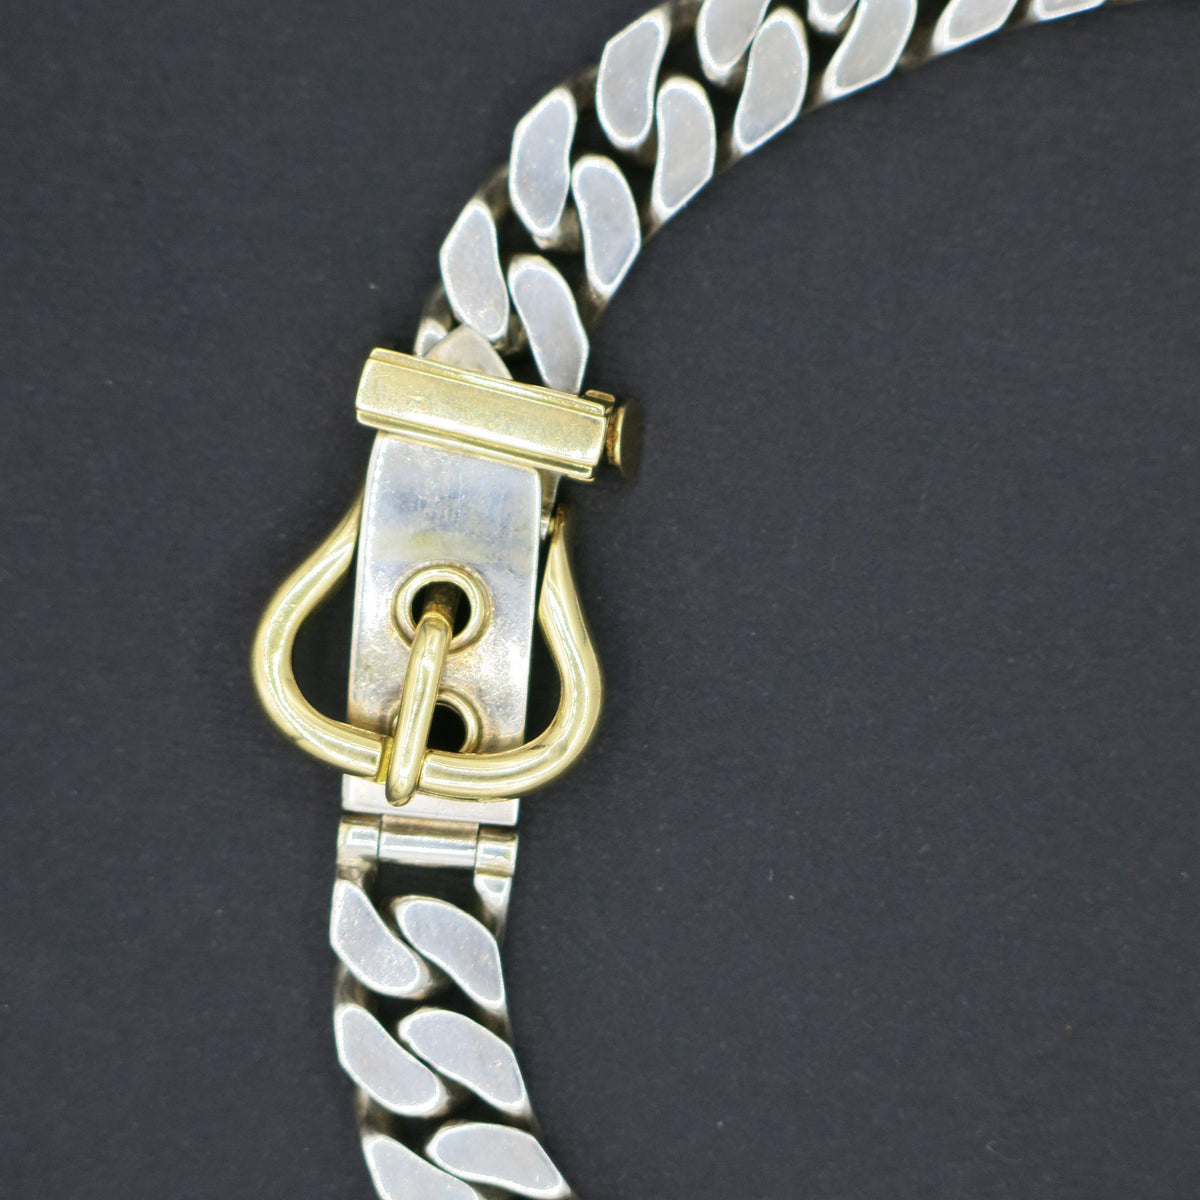 Hermès “Boucle de Ceinture” necklace